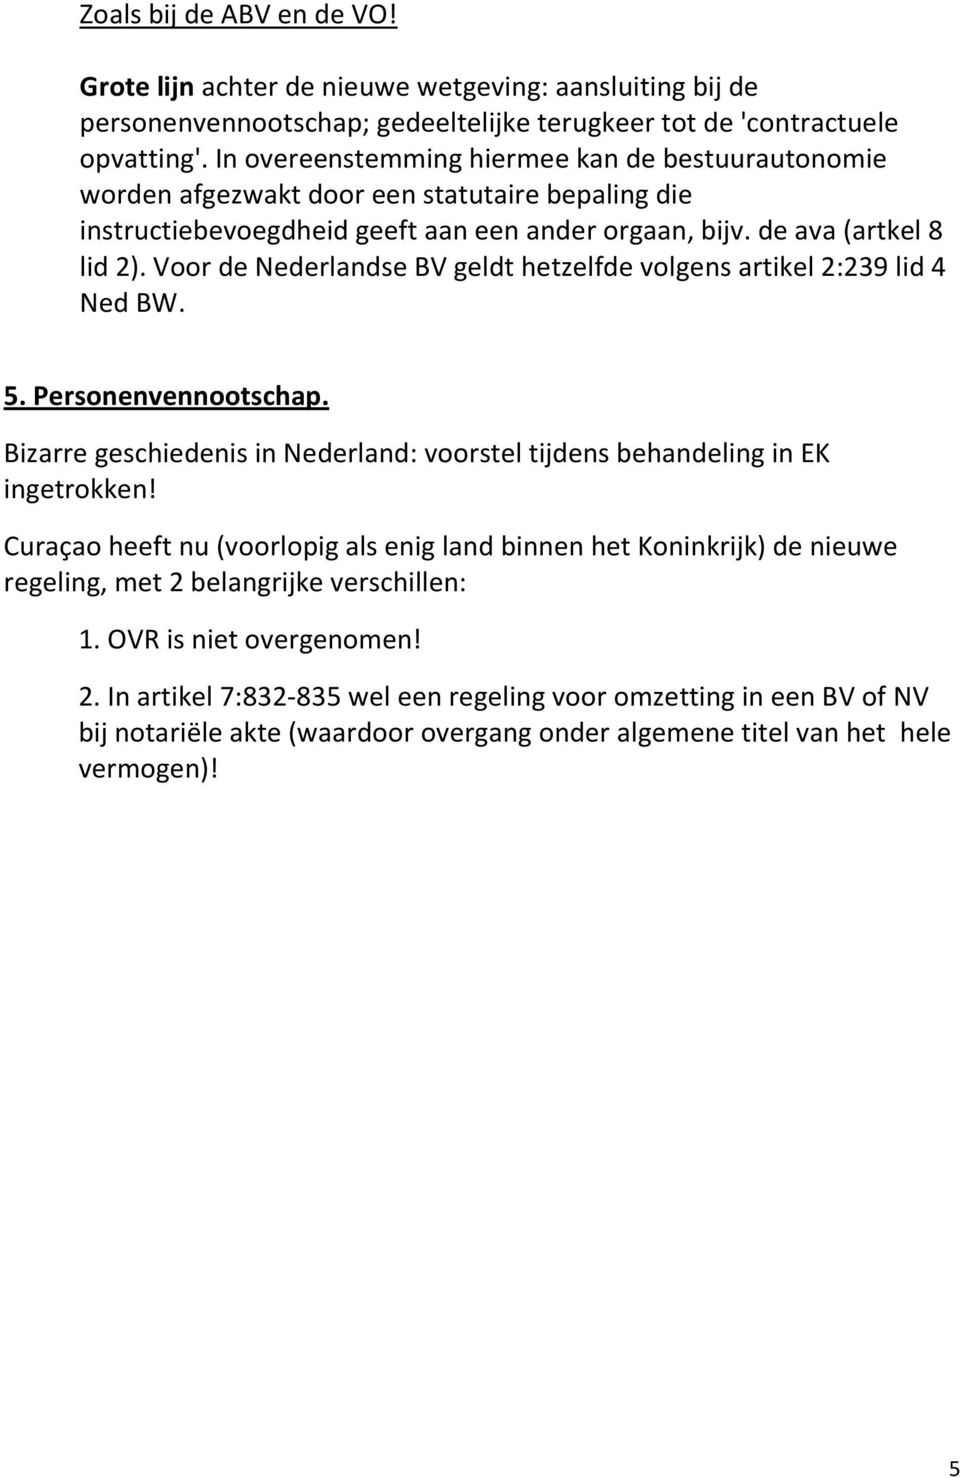 Voor de Nederlandse BV geldt hetzelfde volgens artikel 2:239 lid 4 Ned BW. 5. Personenvennootschap. Bizarre geschiedenis in Nederland: voorstel tijdens behandeling in EK ingetrokken!